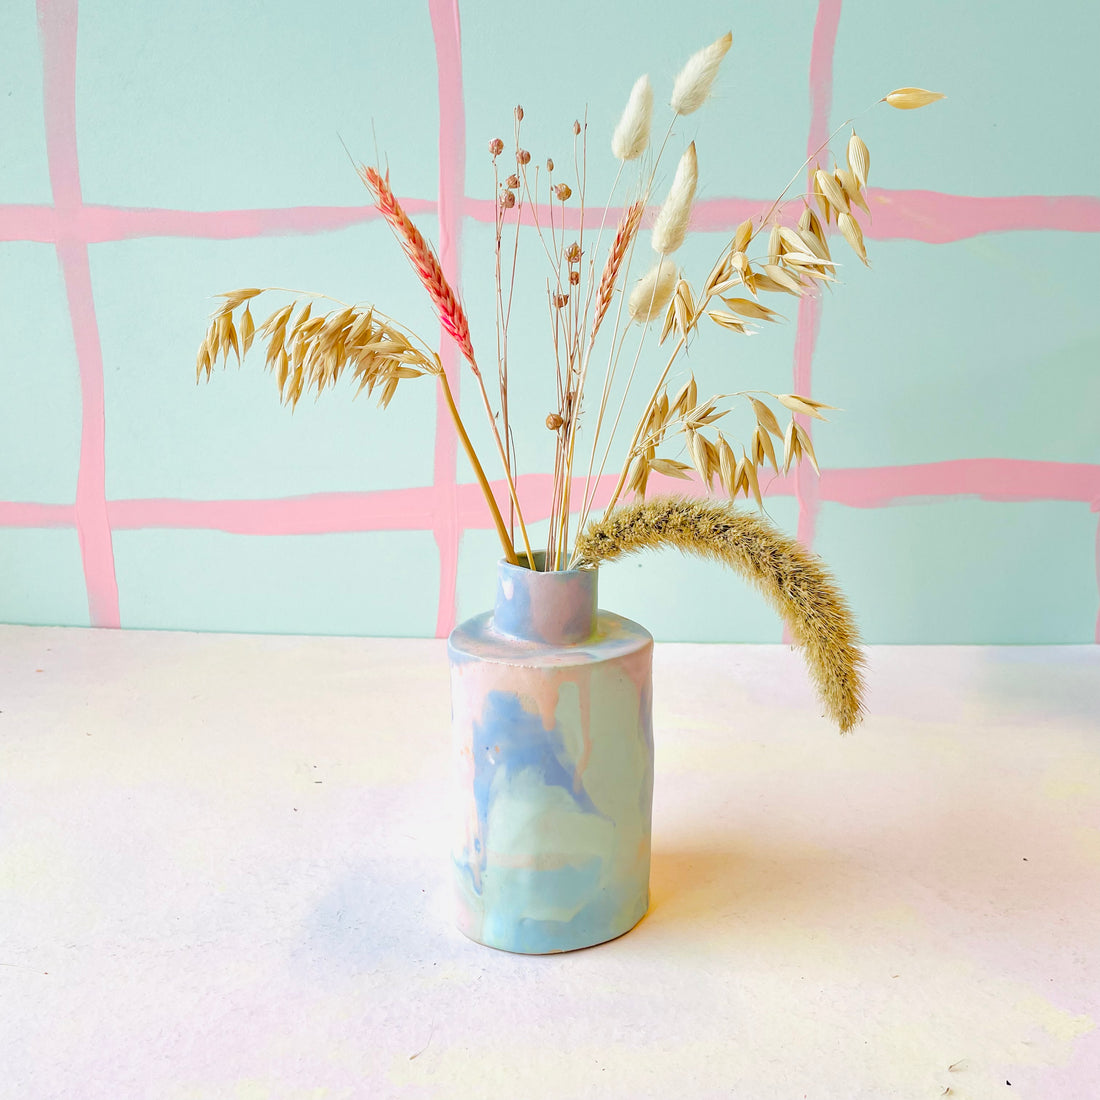 Vase med splash i skønne pastel farver